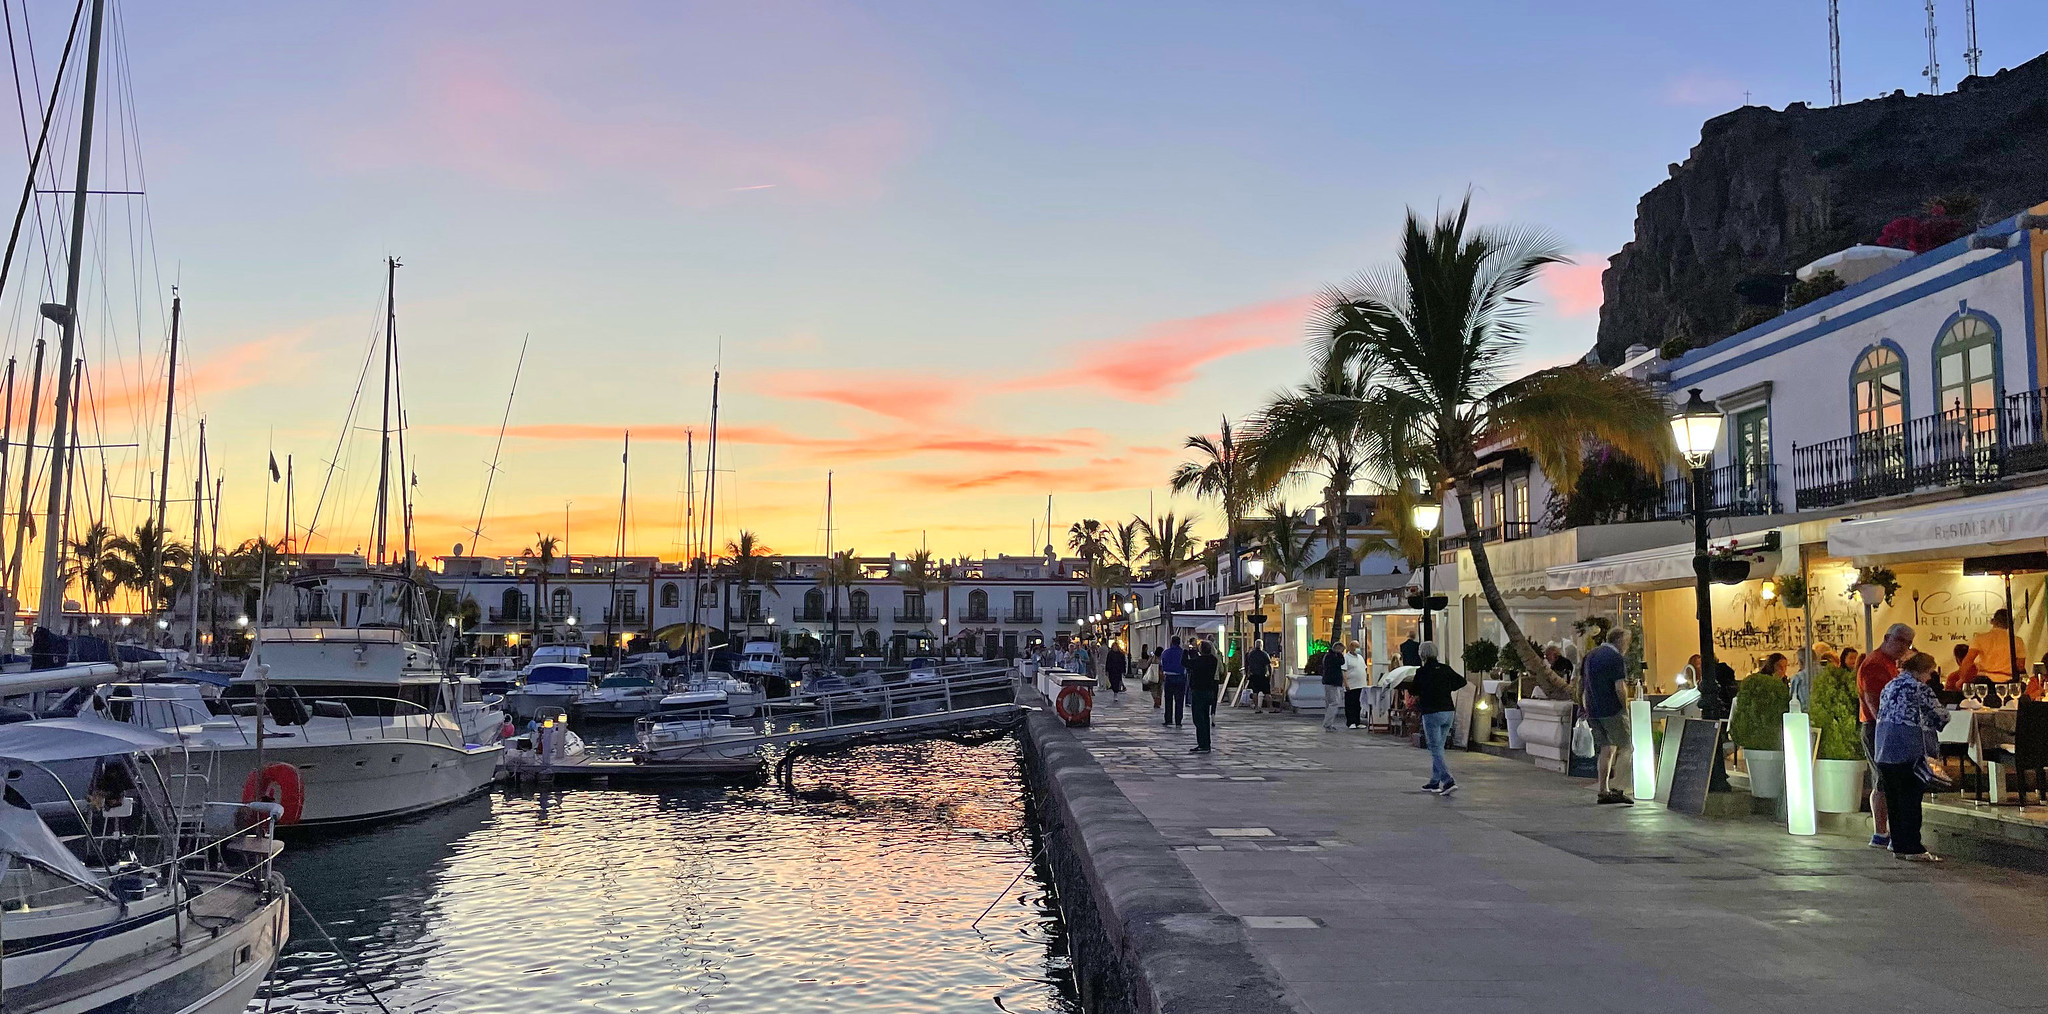 Qué ver en Puerto de Mogán, la Venecia de Canarias - Gran Canaria - Thewotme